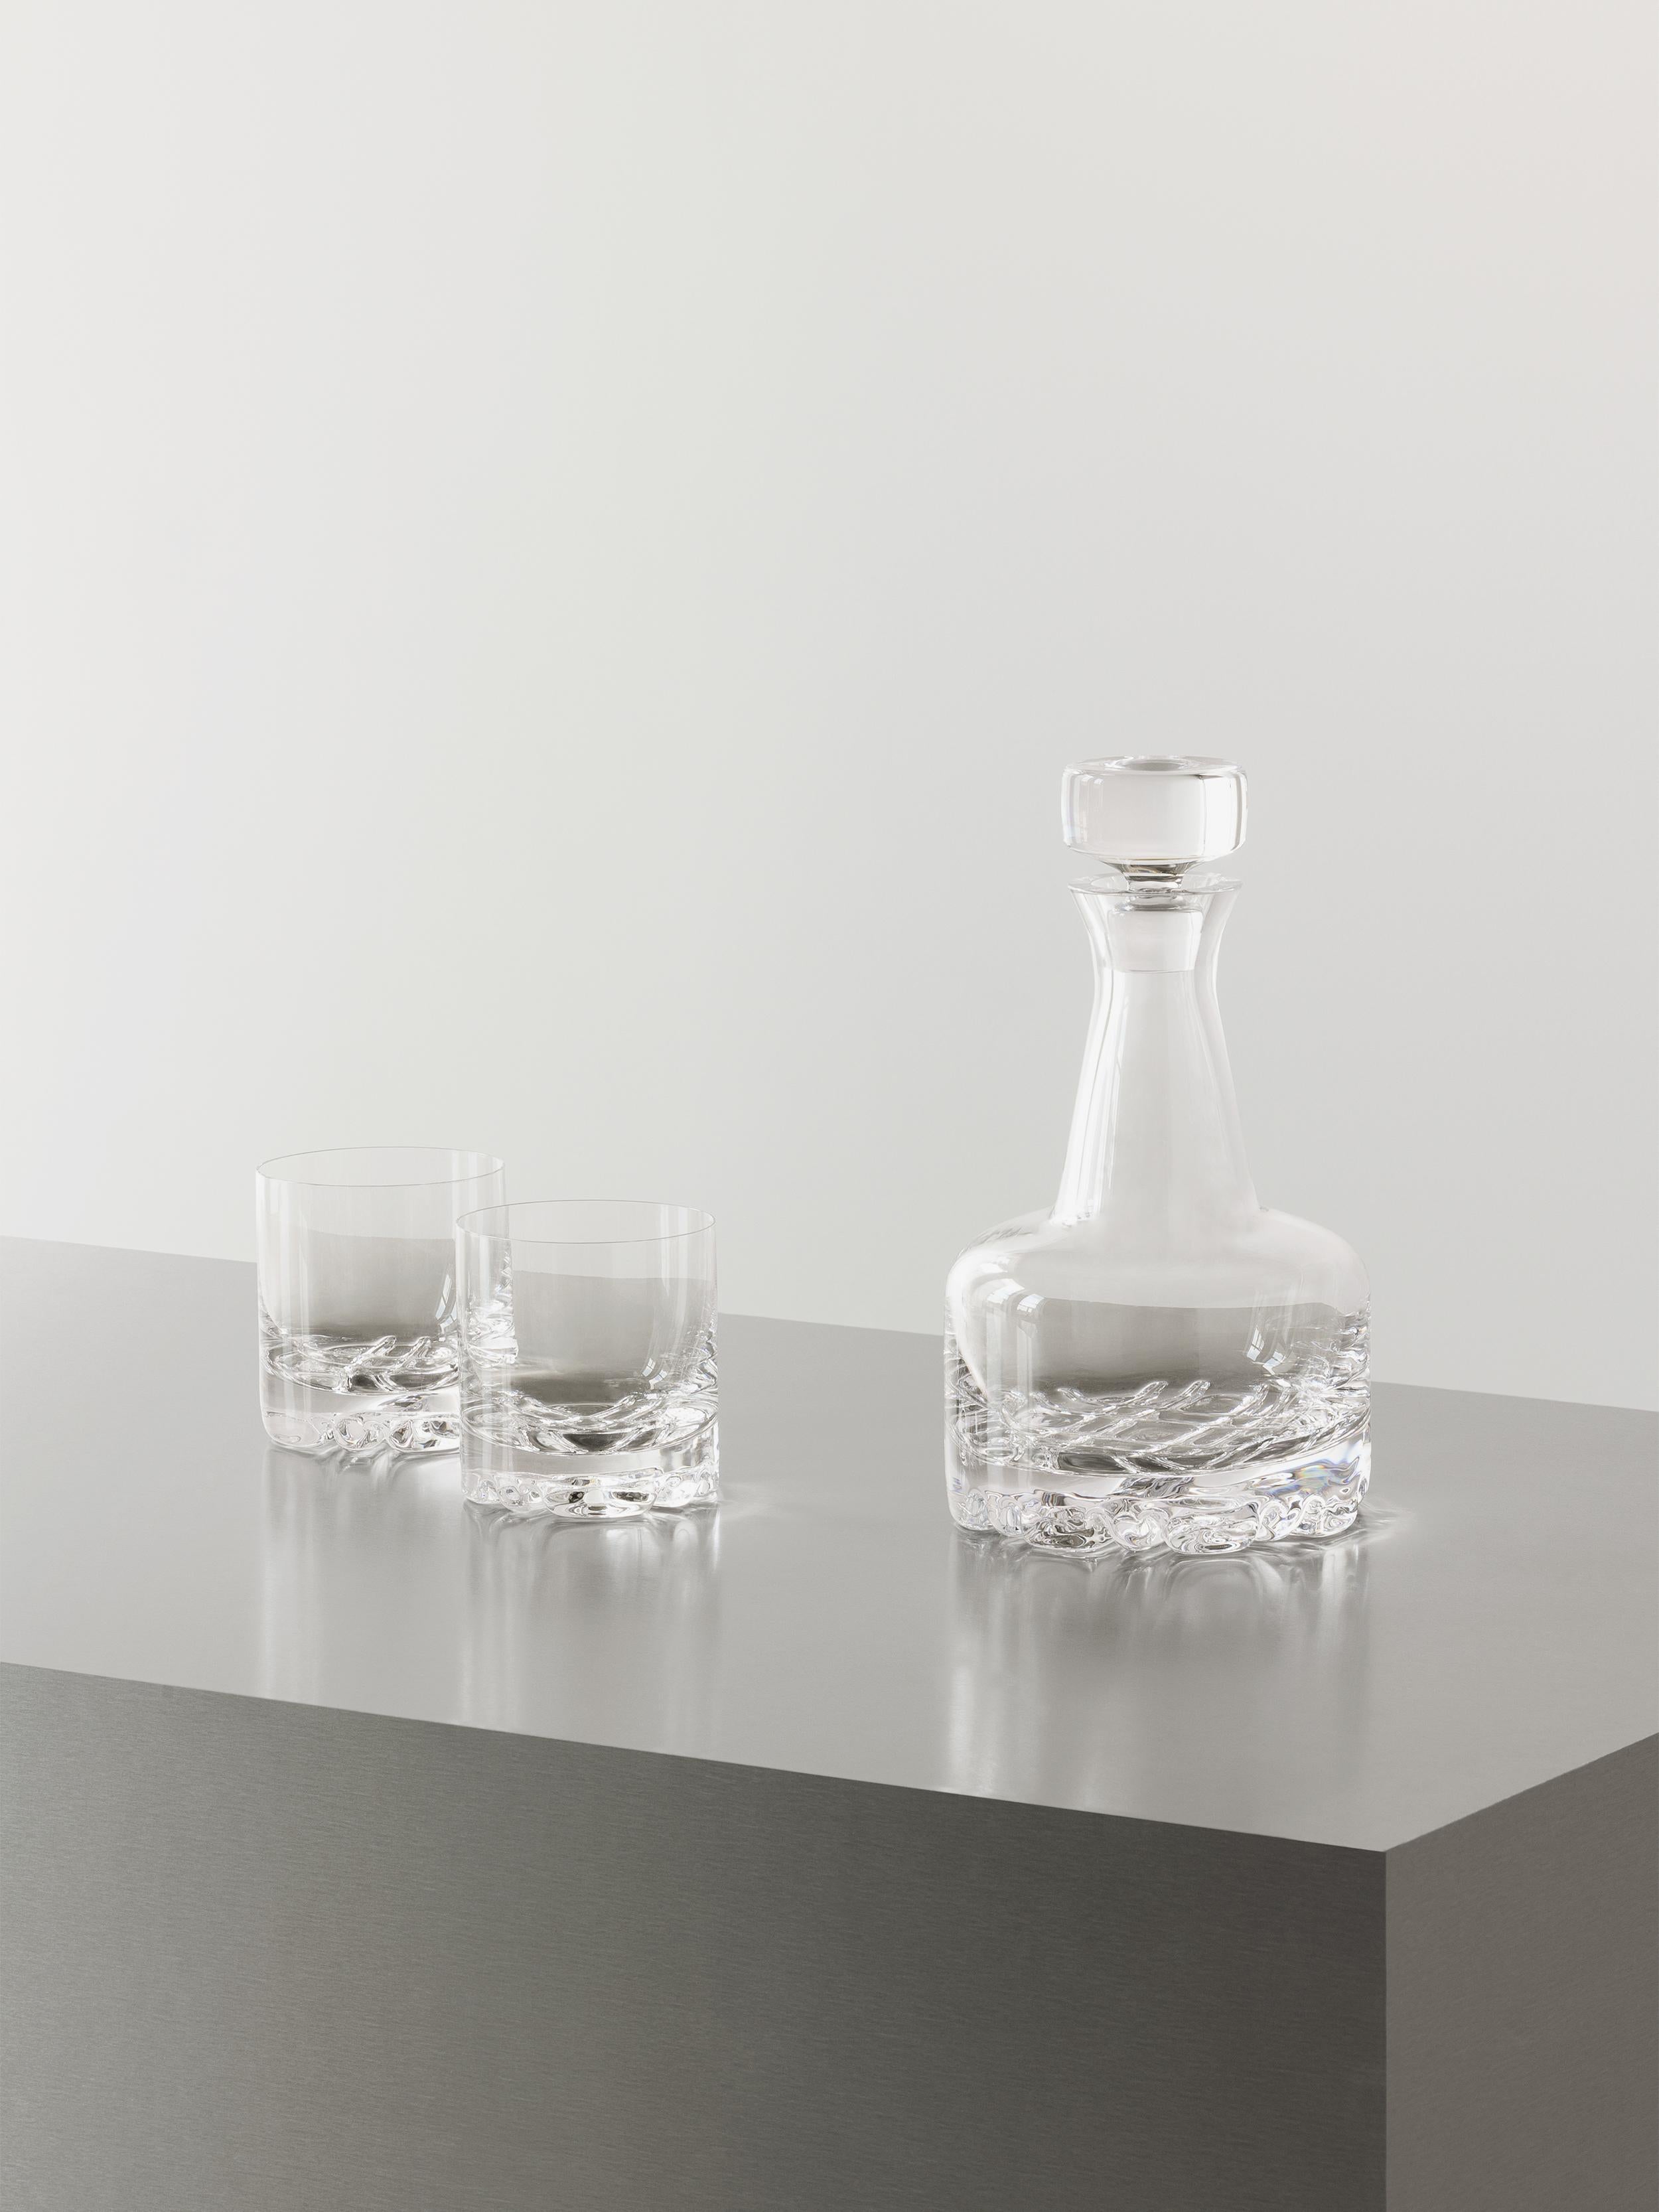 Das Erik 3 Piece Set von Orrefors besteht aus einer Karaffe und zwei DOF-Gläsern. Ein perfektes Set für alle Whiskey-Liebhaber, die das moderne Design der 70er Jahre schätzen, das sich durch skandinavische Schlichtheit und klare Linien auszeichnet.